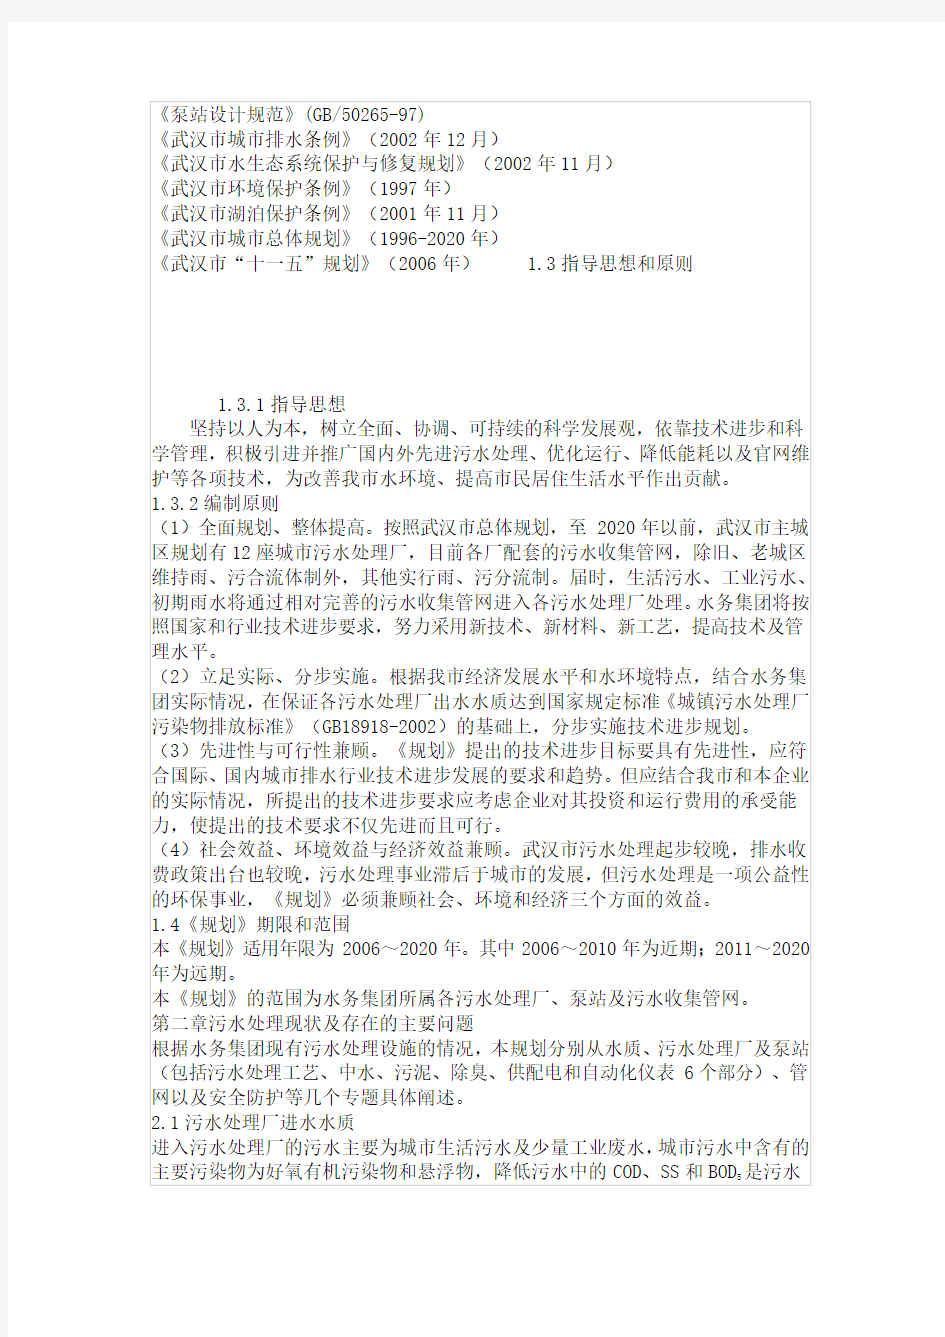 武汉市水务集团有限公司技术进步规划(2006年—2020年)排水分册(上)